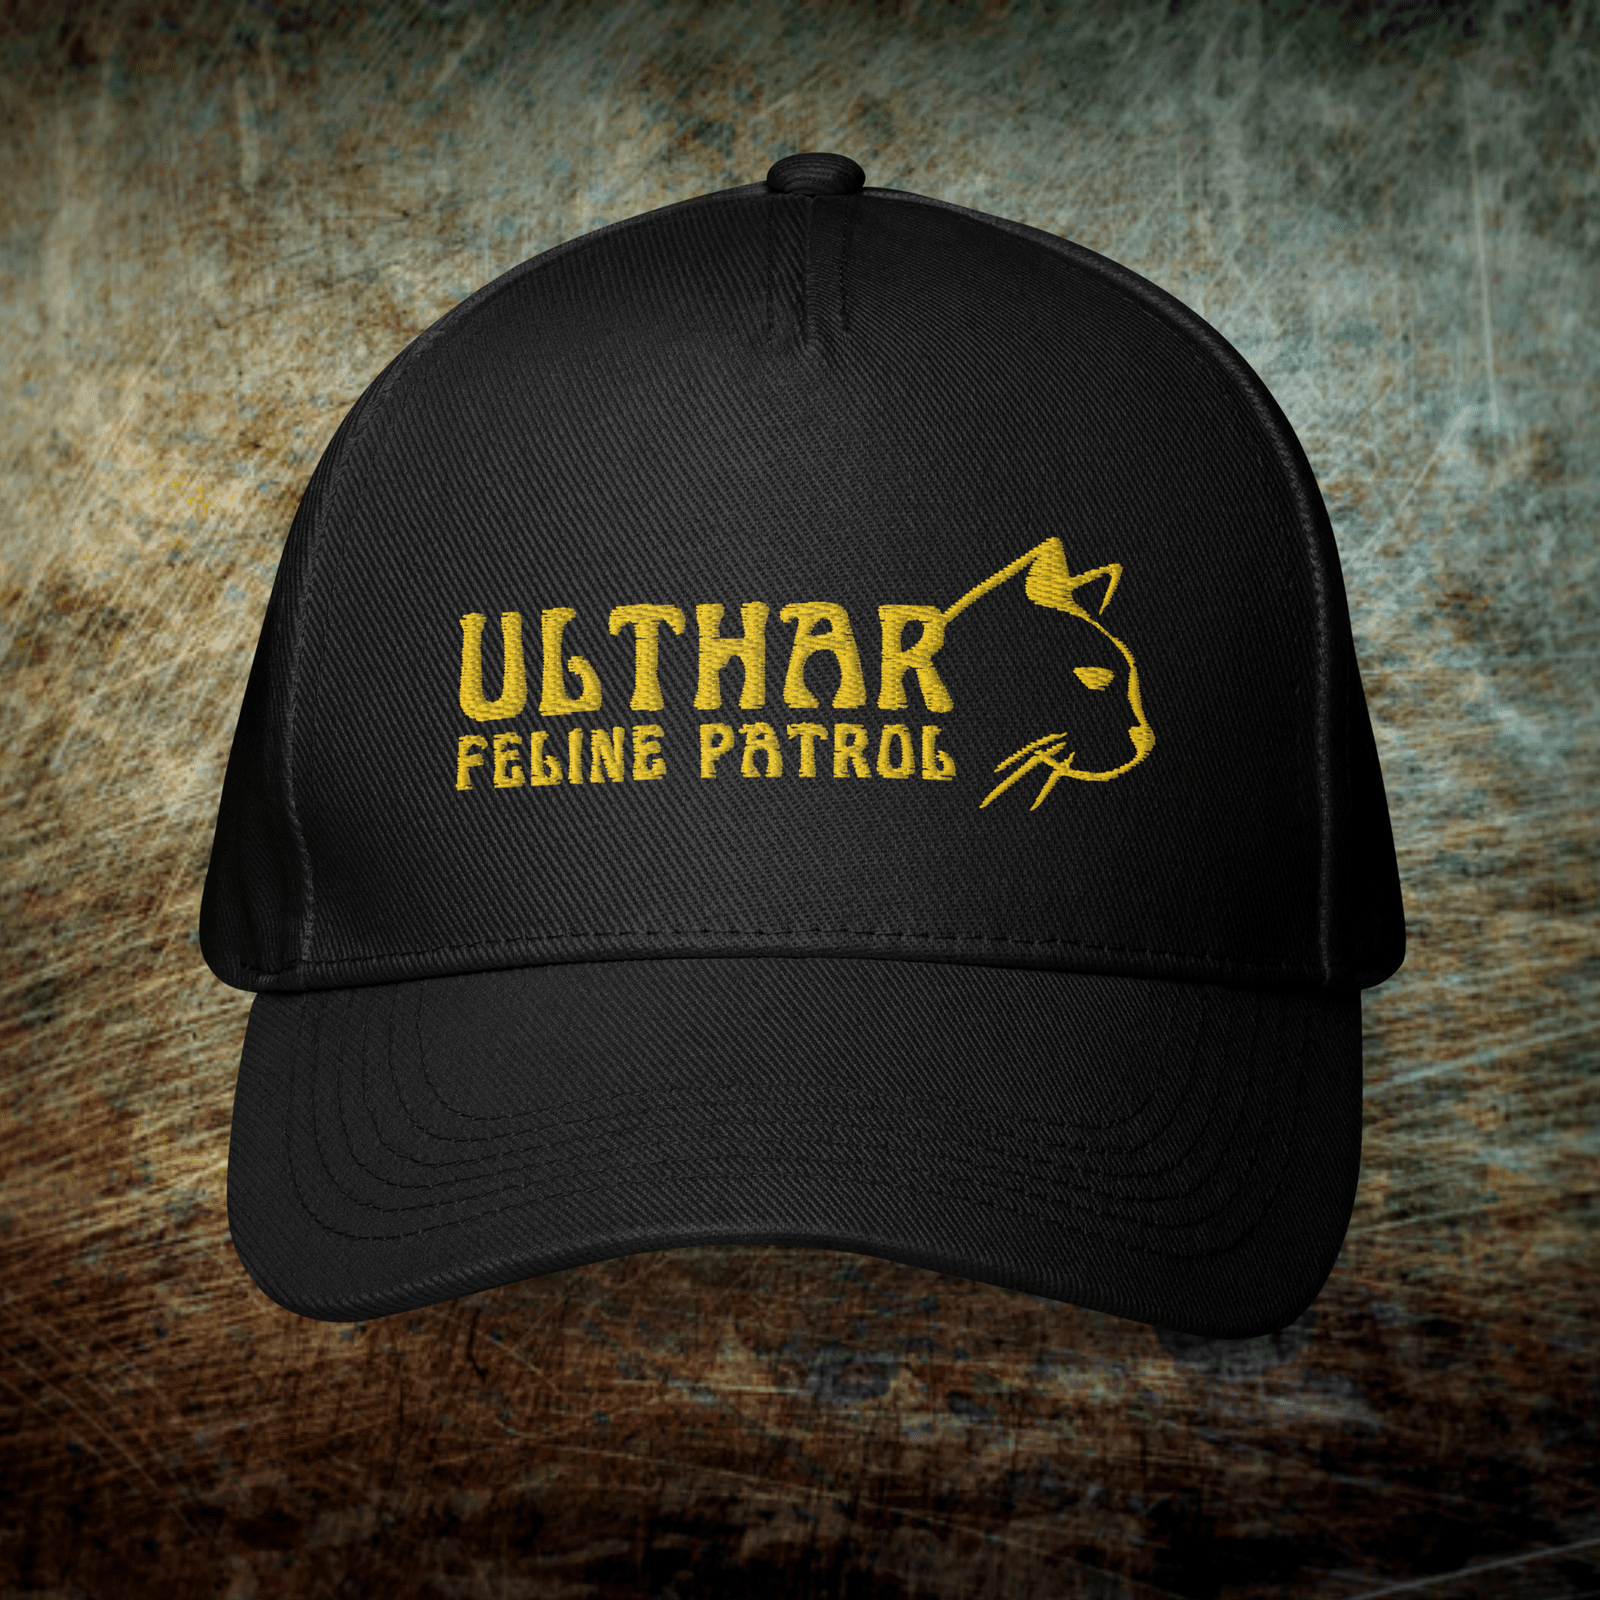 Ulthar's Feline Patrol